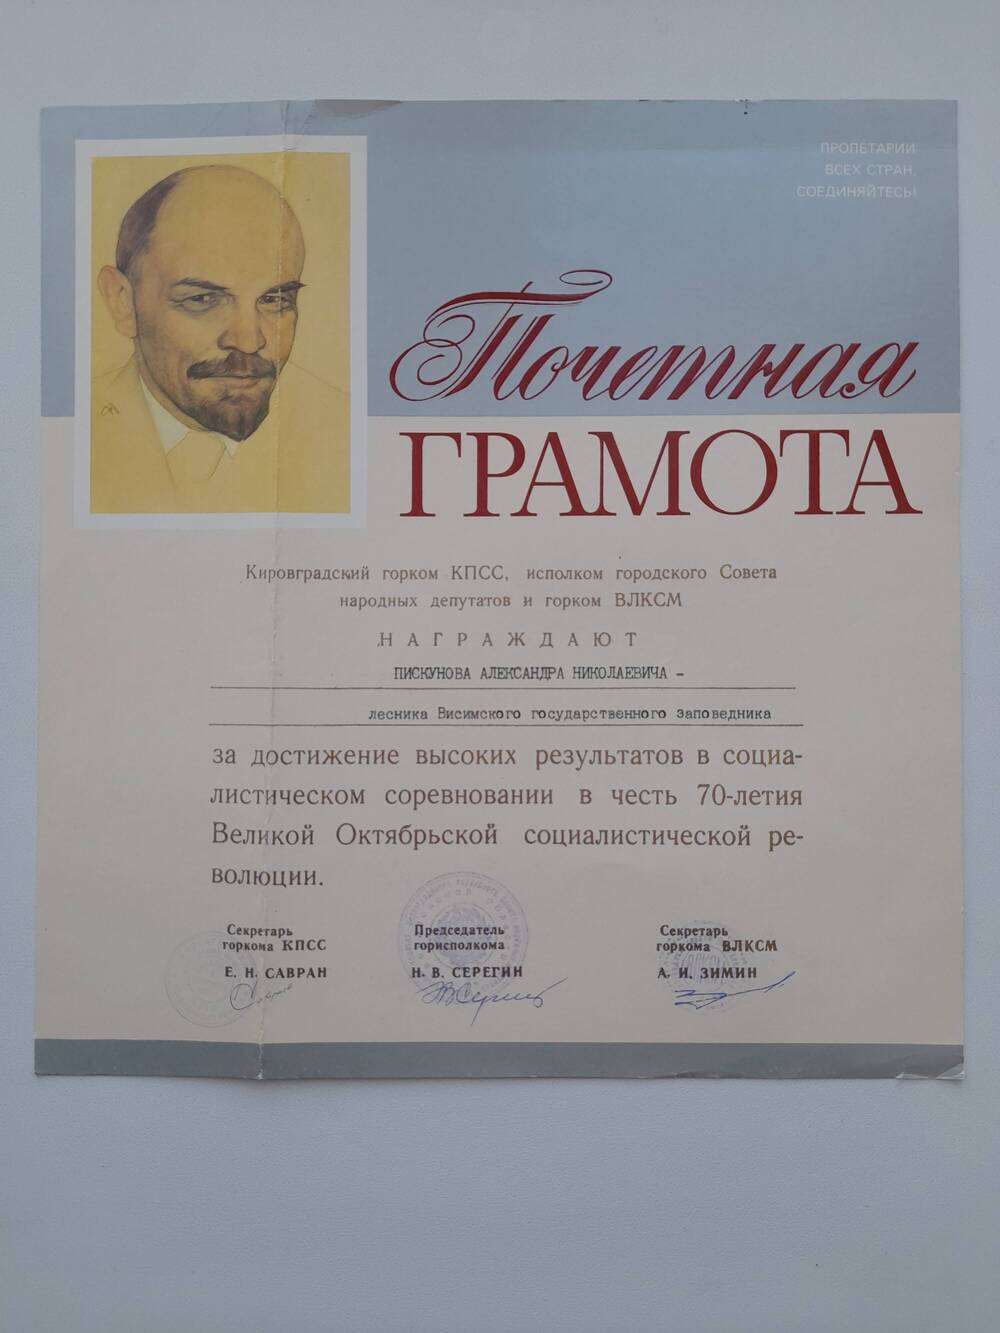 Грамота почетная Пискунова А.Н. в честь 70 - летия Великой Октябрьской революции